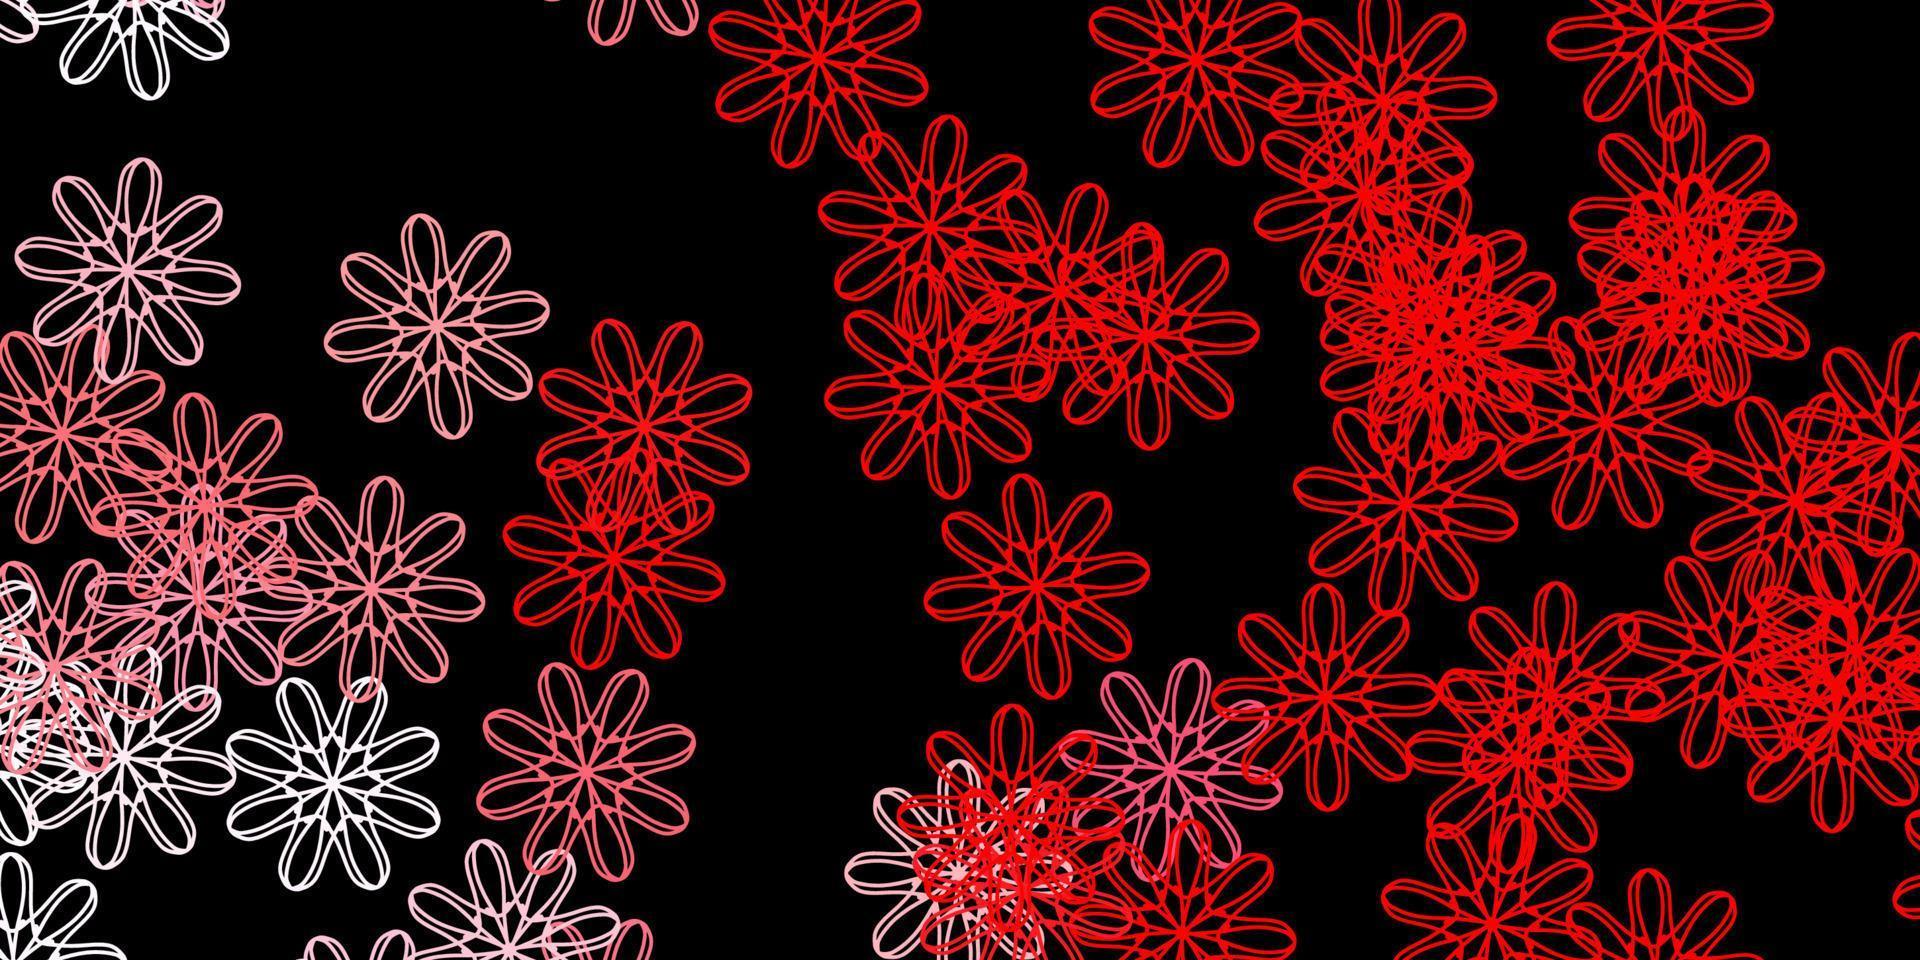 padrão de vetor vermelho escuro com formas abstratas.